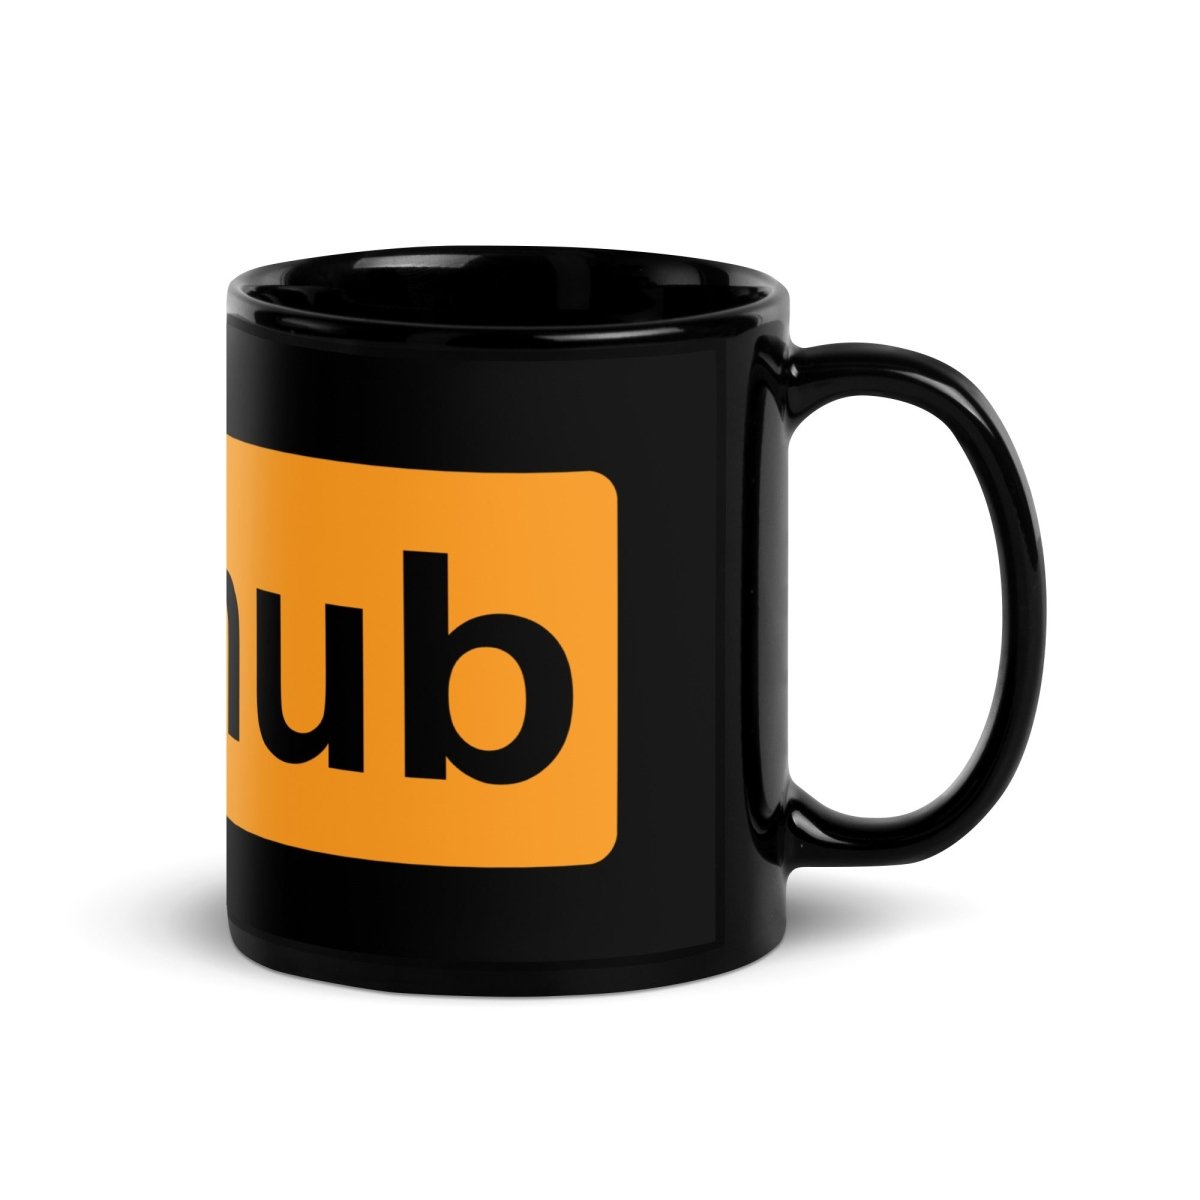 Adult GitHub Black Glossy Mug - AI Store